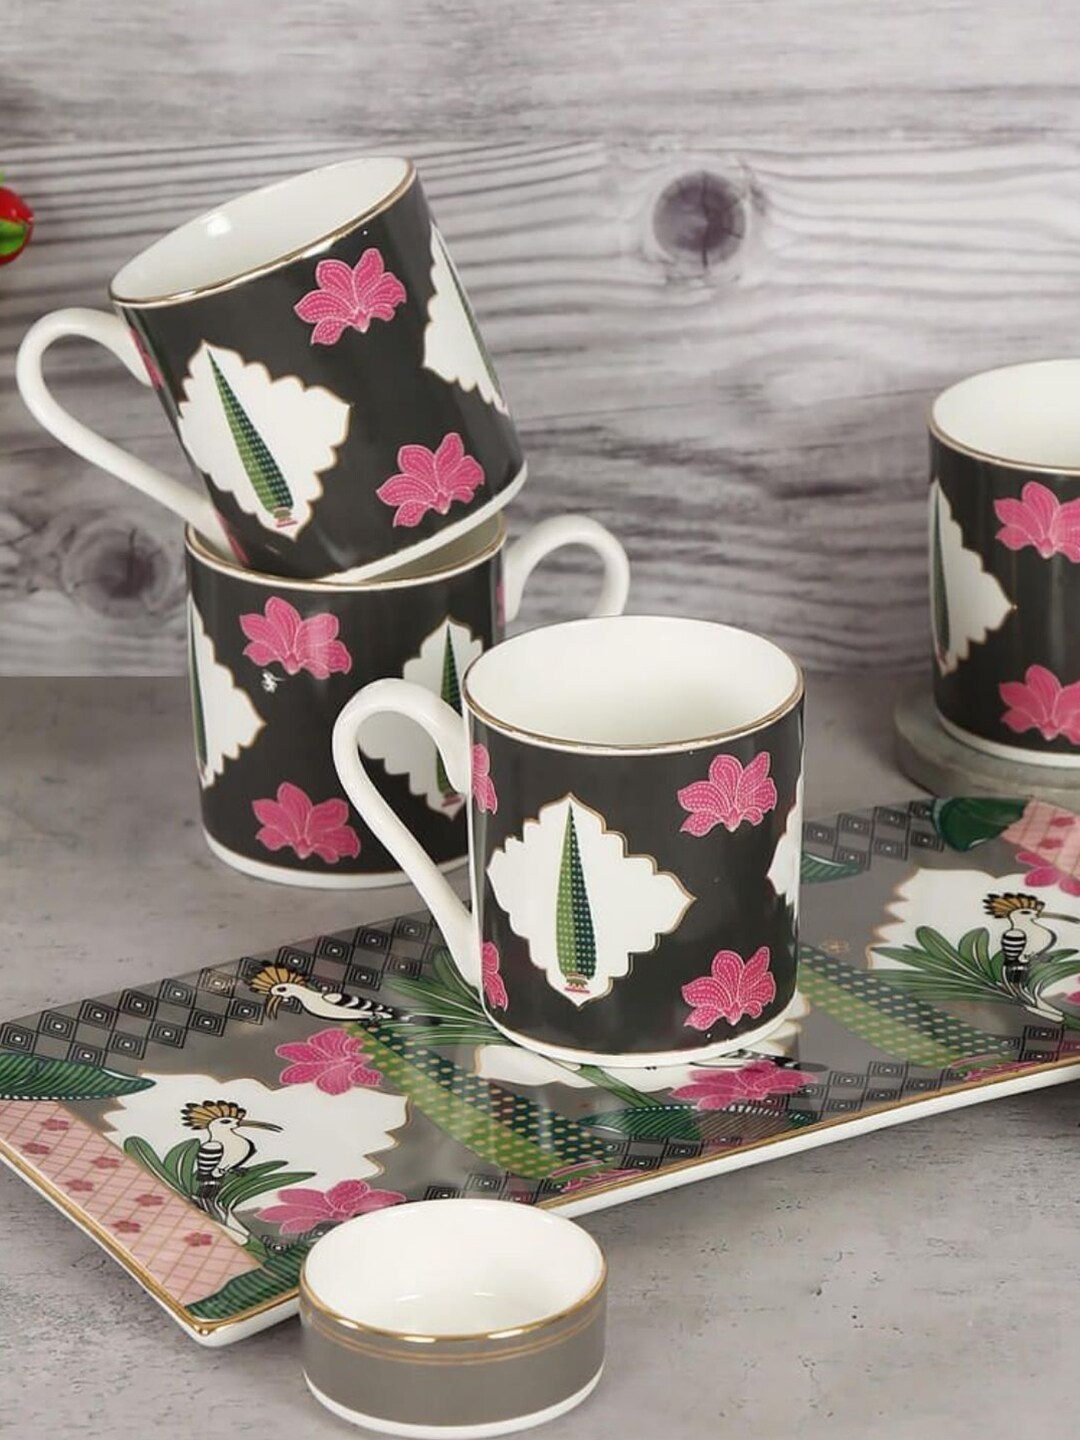 India Circus Black & Pink Floral Printed Set of 7 Ceramic Glossy Mug and Bowl Price in India